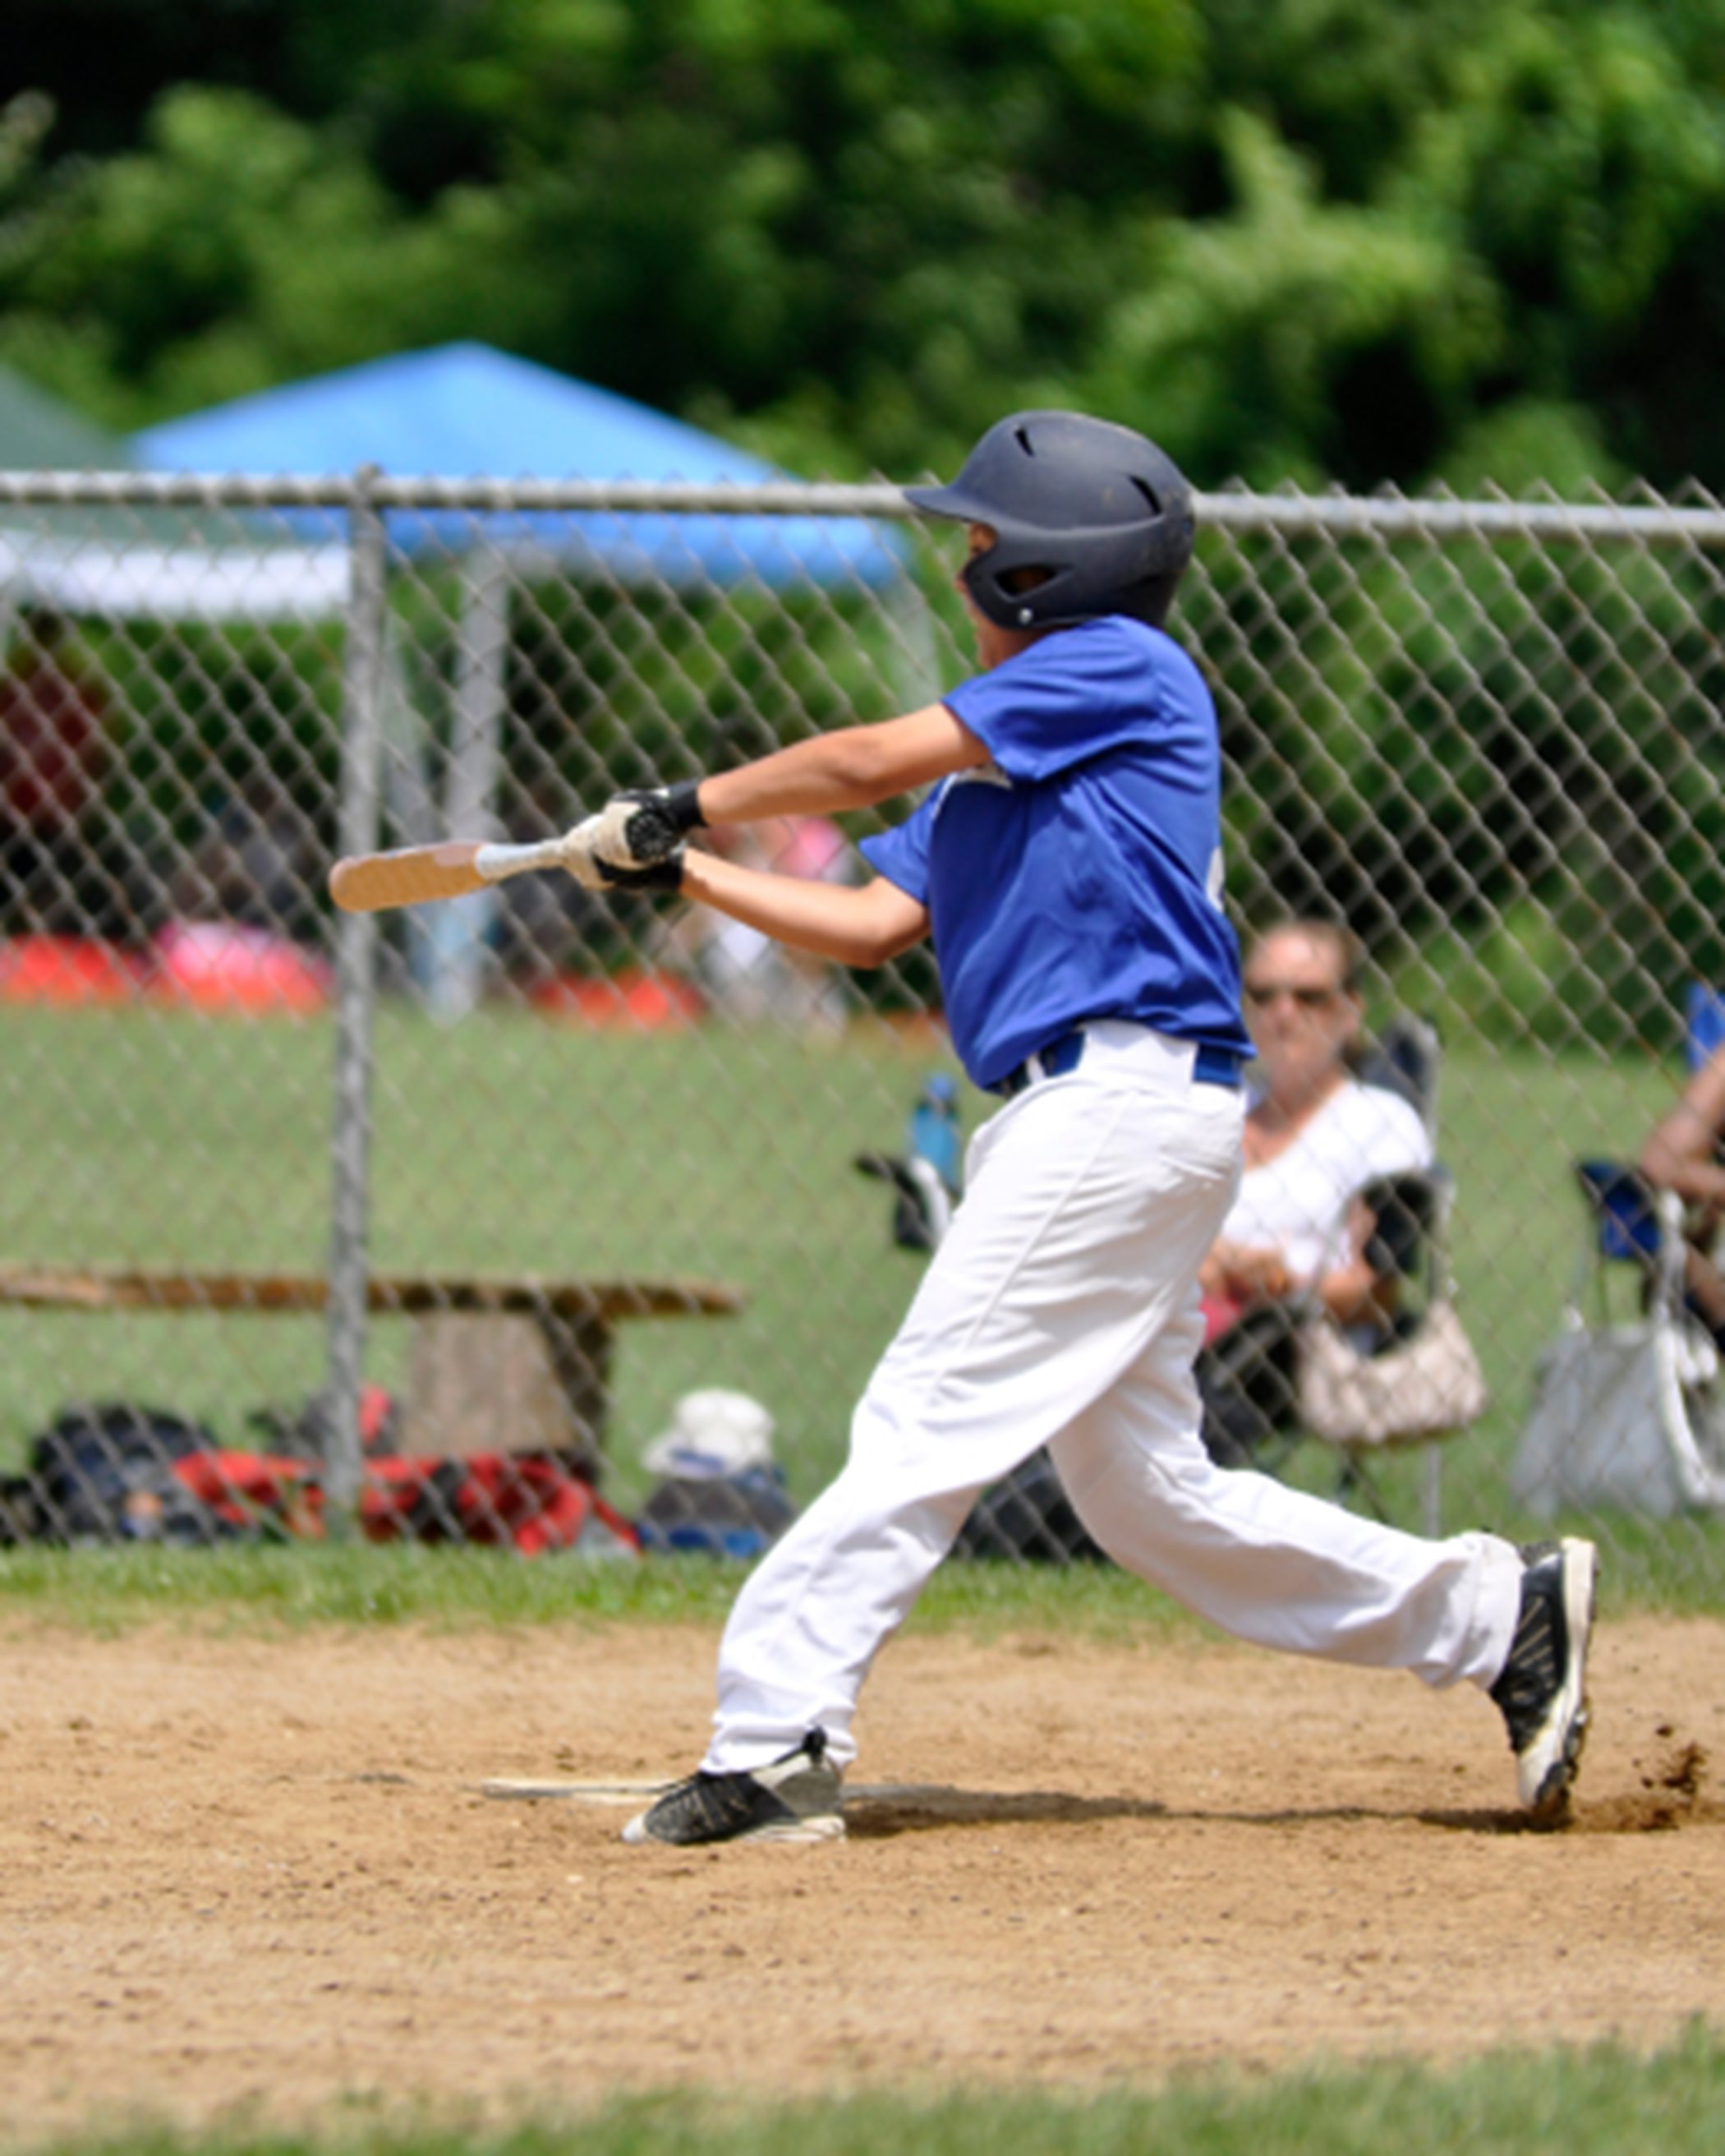 A child playing baseball